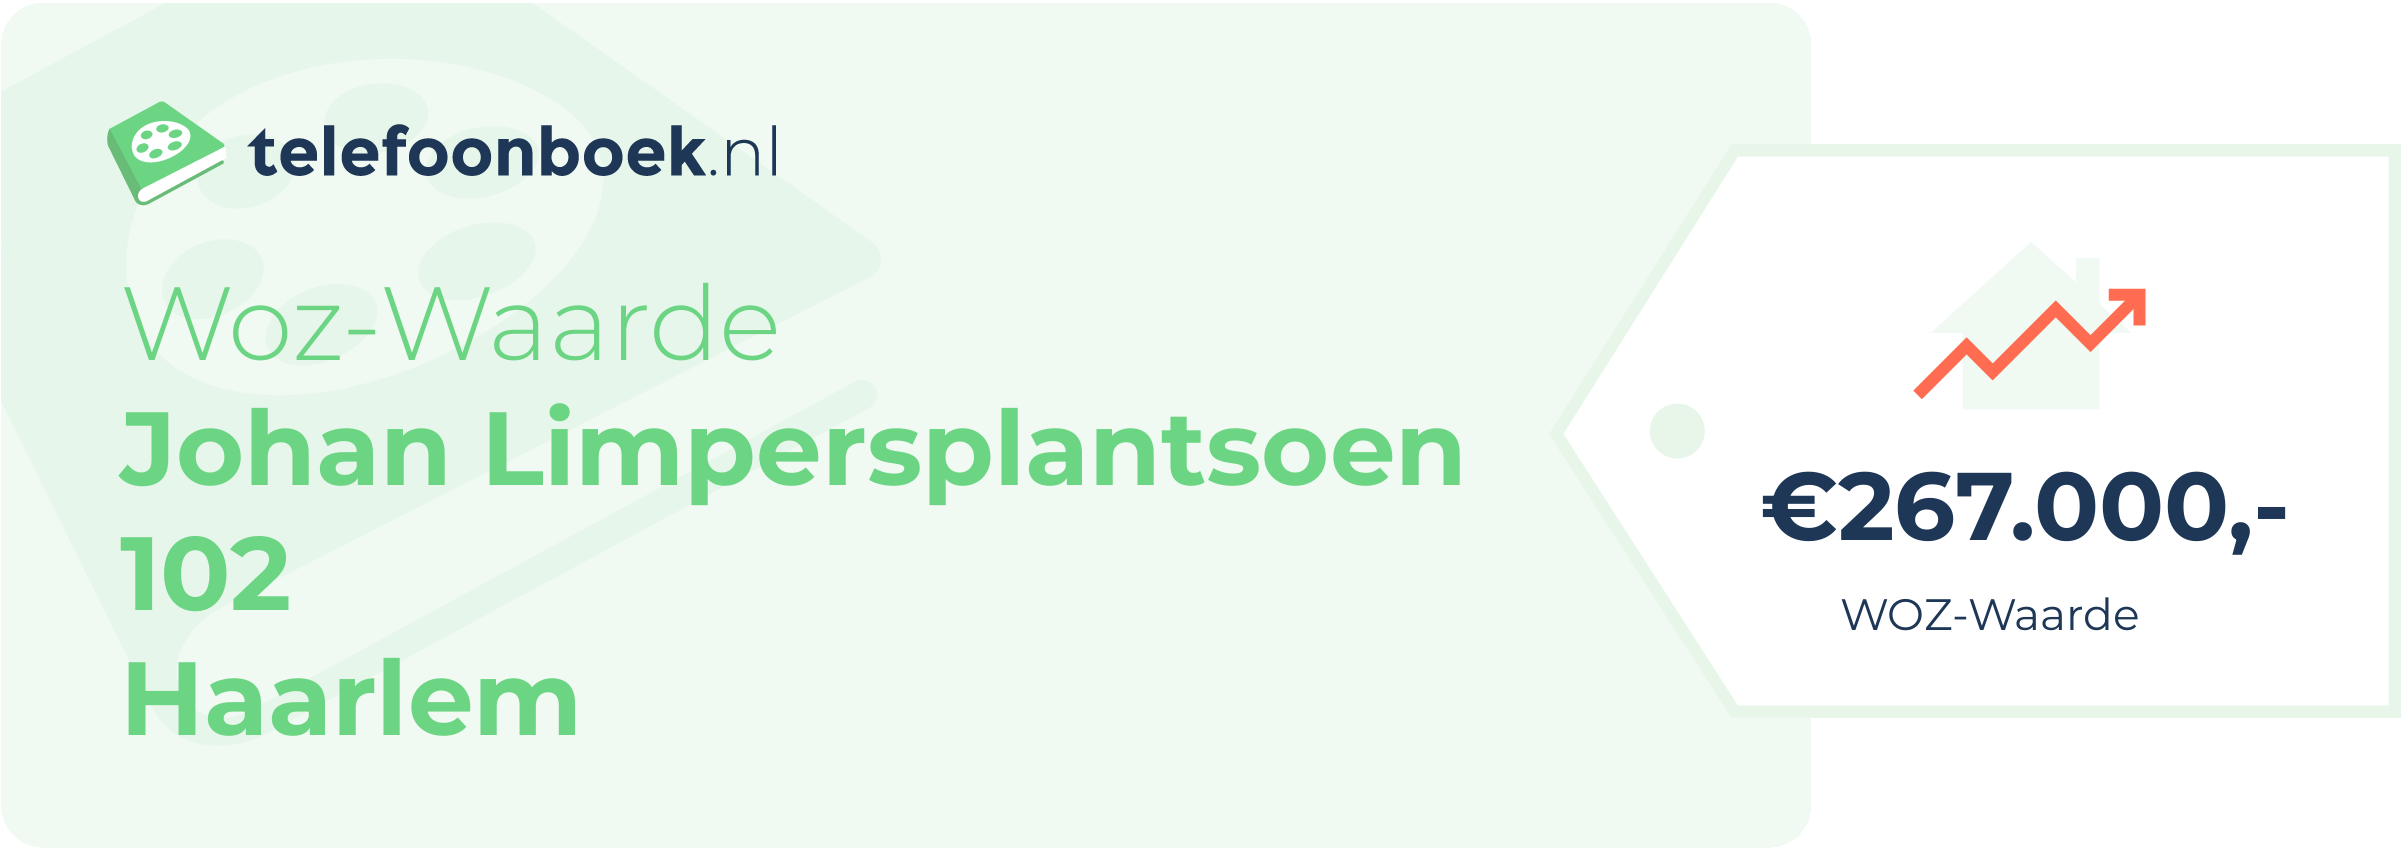 WOZ-waarde Johan Limpersplantsoen 102 Haarlem